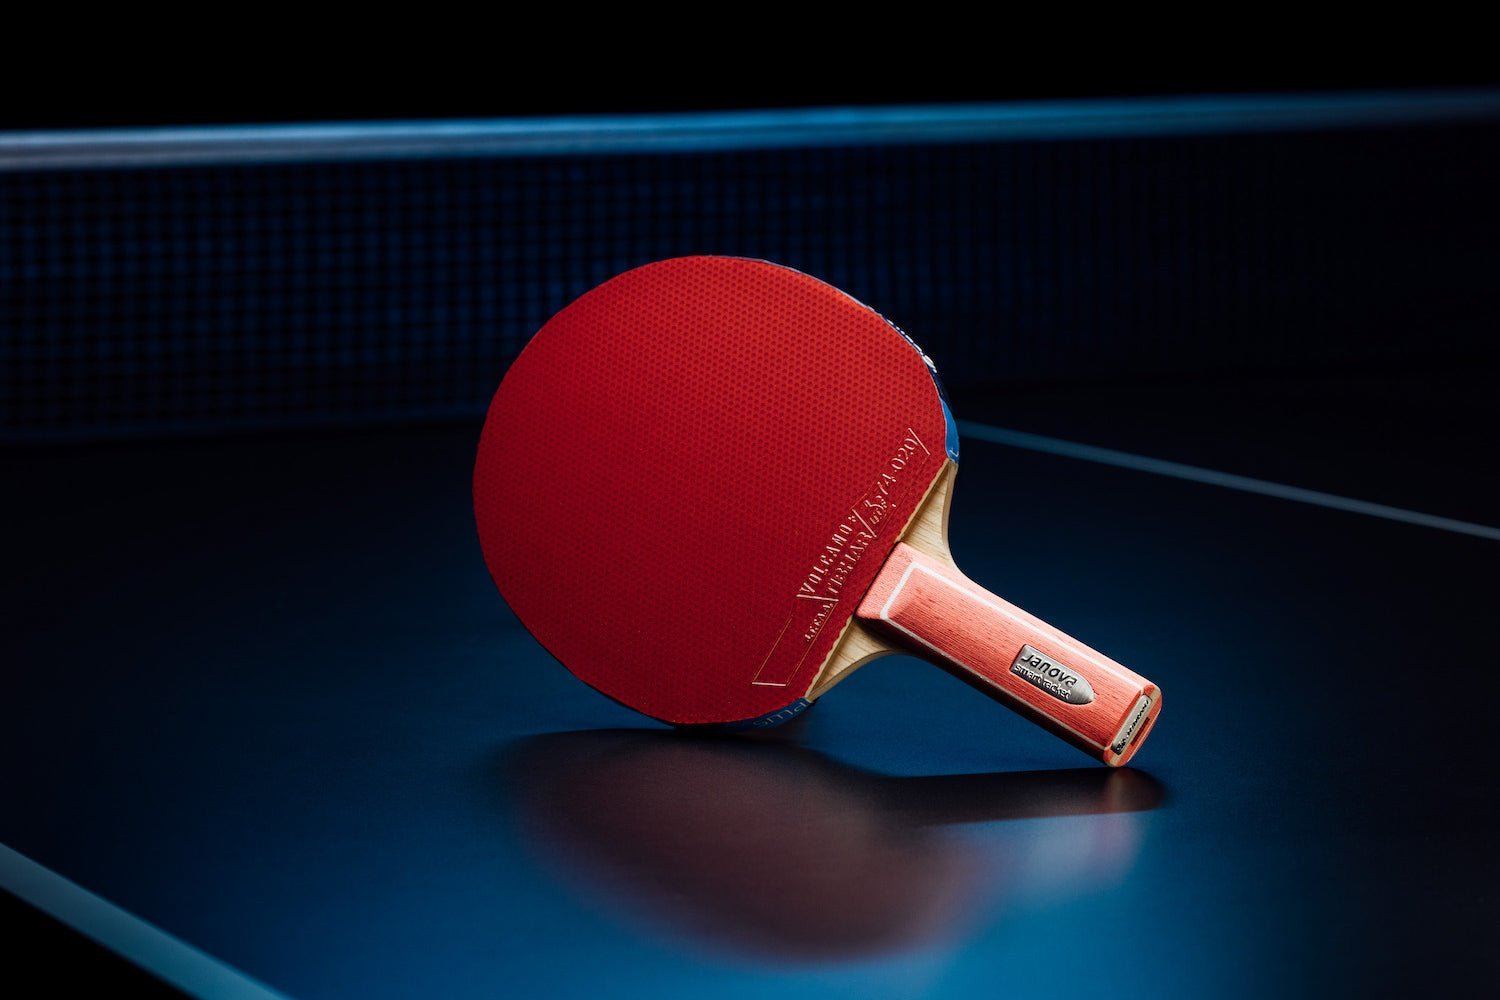 Stehender Smart Racket ROOKIE Tischtennisschläger mit geradem Griff, Janova Sensor, USB-C-Buchse auf Tischtennistisch